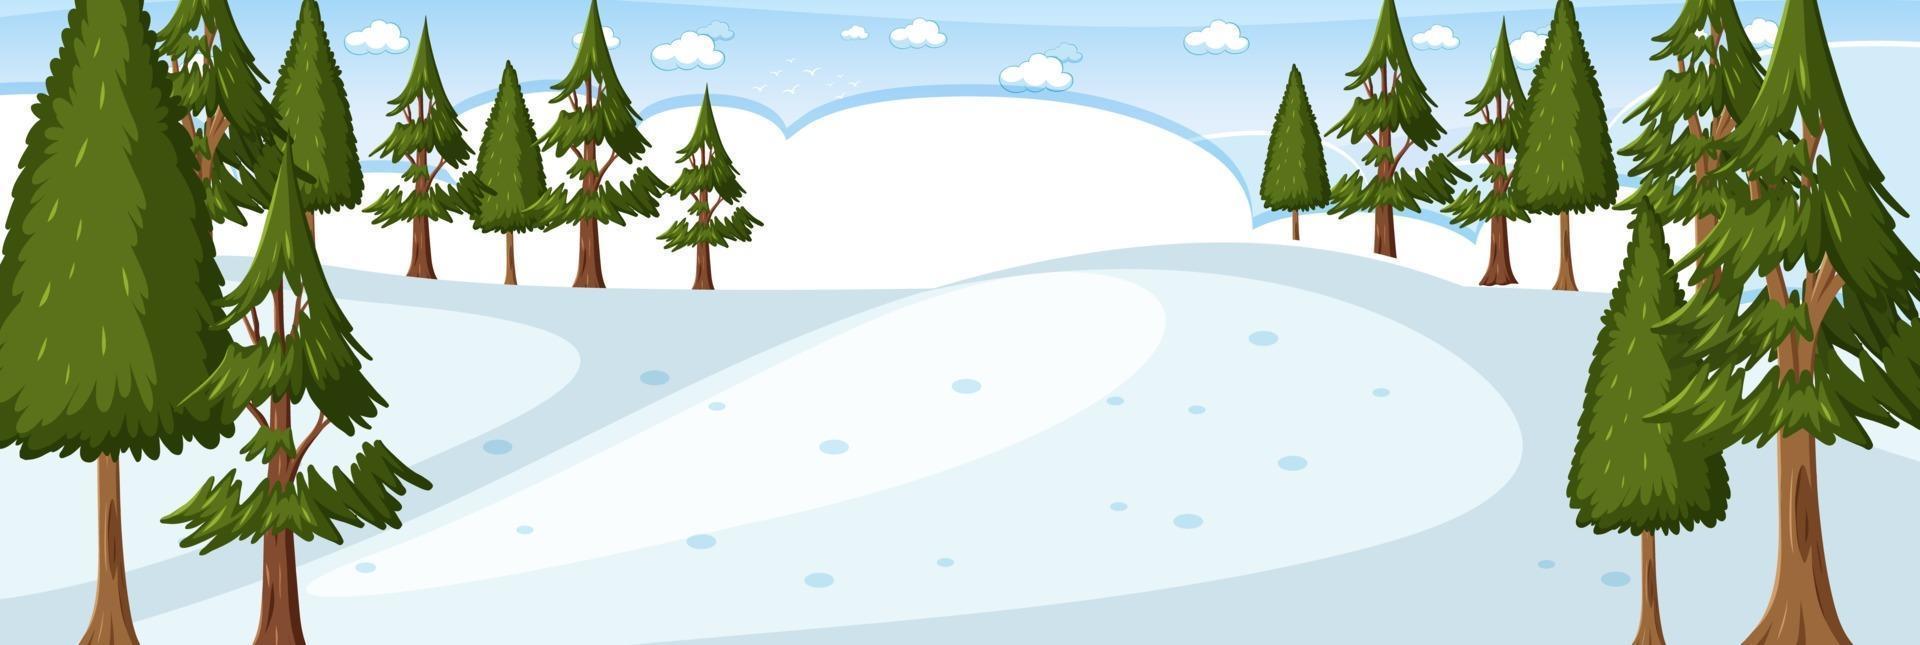 bosque de invierno en blanco escena de paisaje horizontal vector